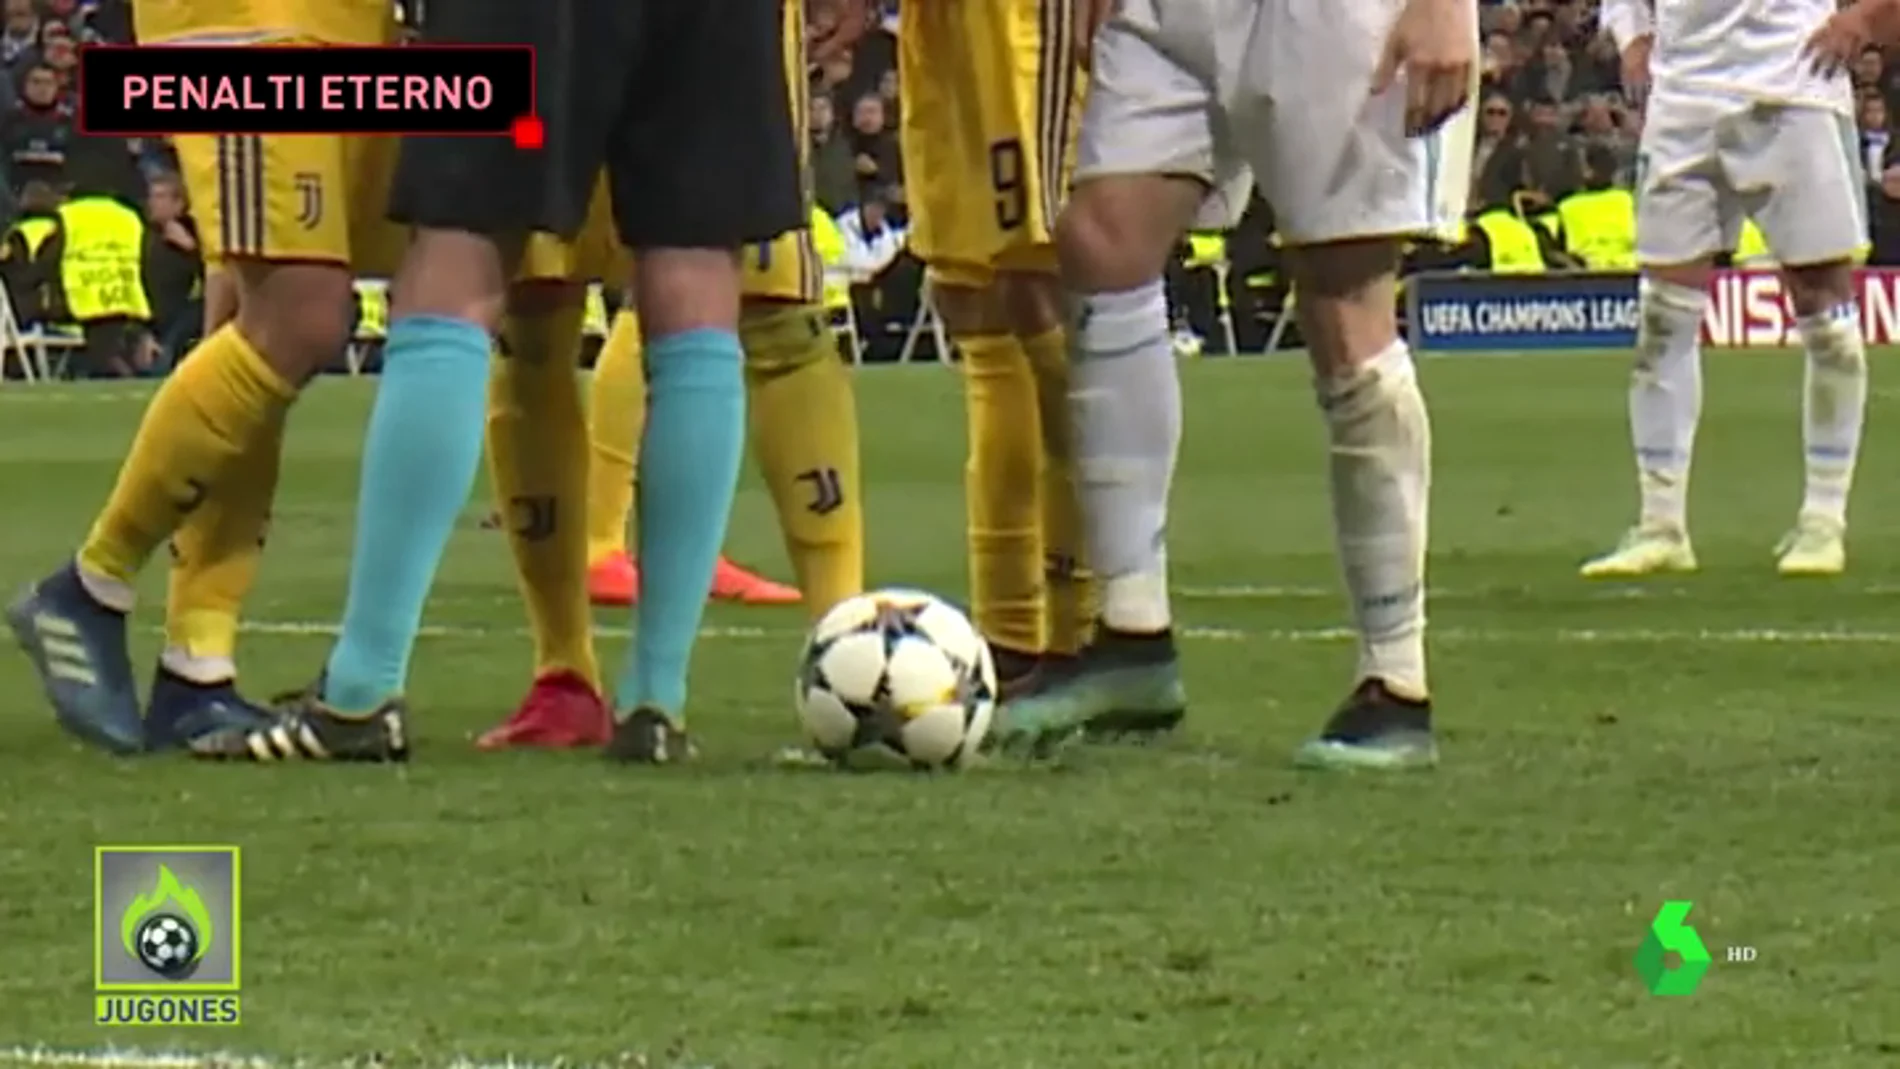 Las artimañanas de la Juventus para desconcentrar a Cristiano Ronaldo en un penalti eterno